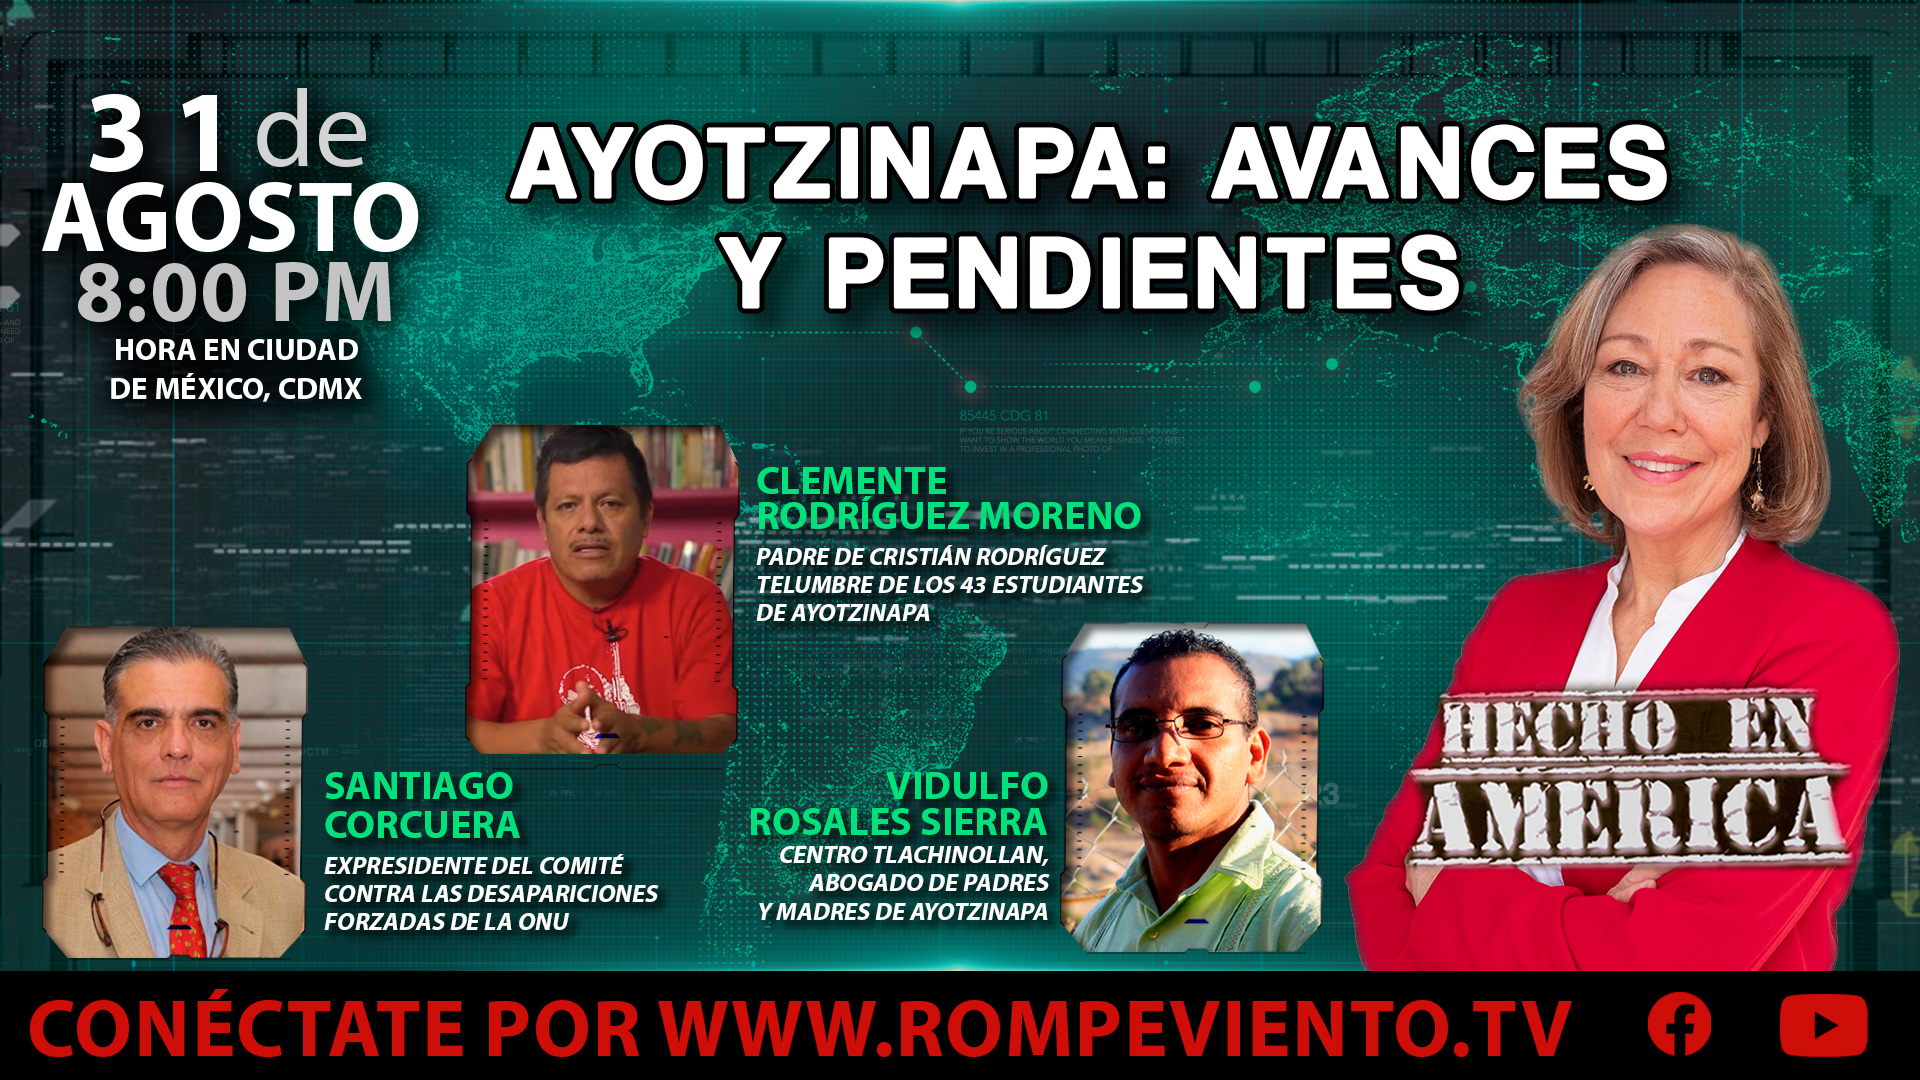 Ayotzinapa: Avances y pendientes - Hecho en América